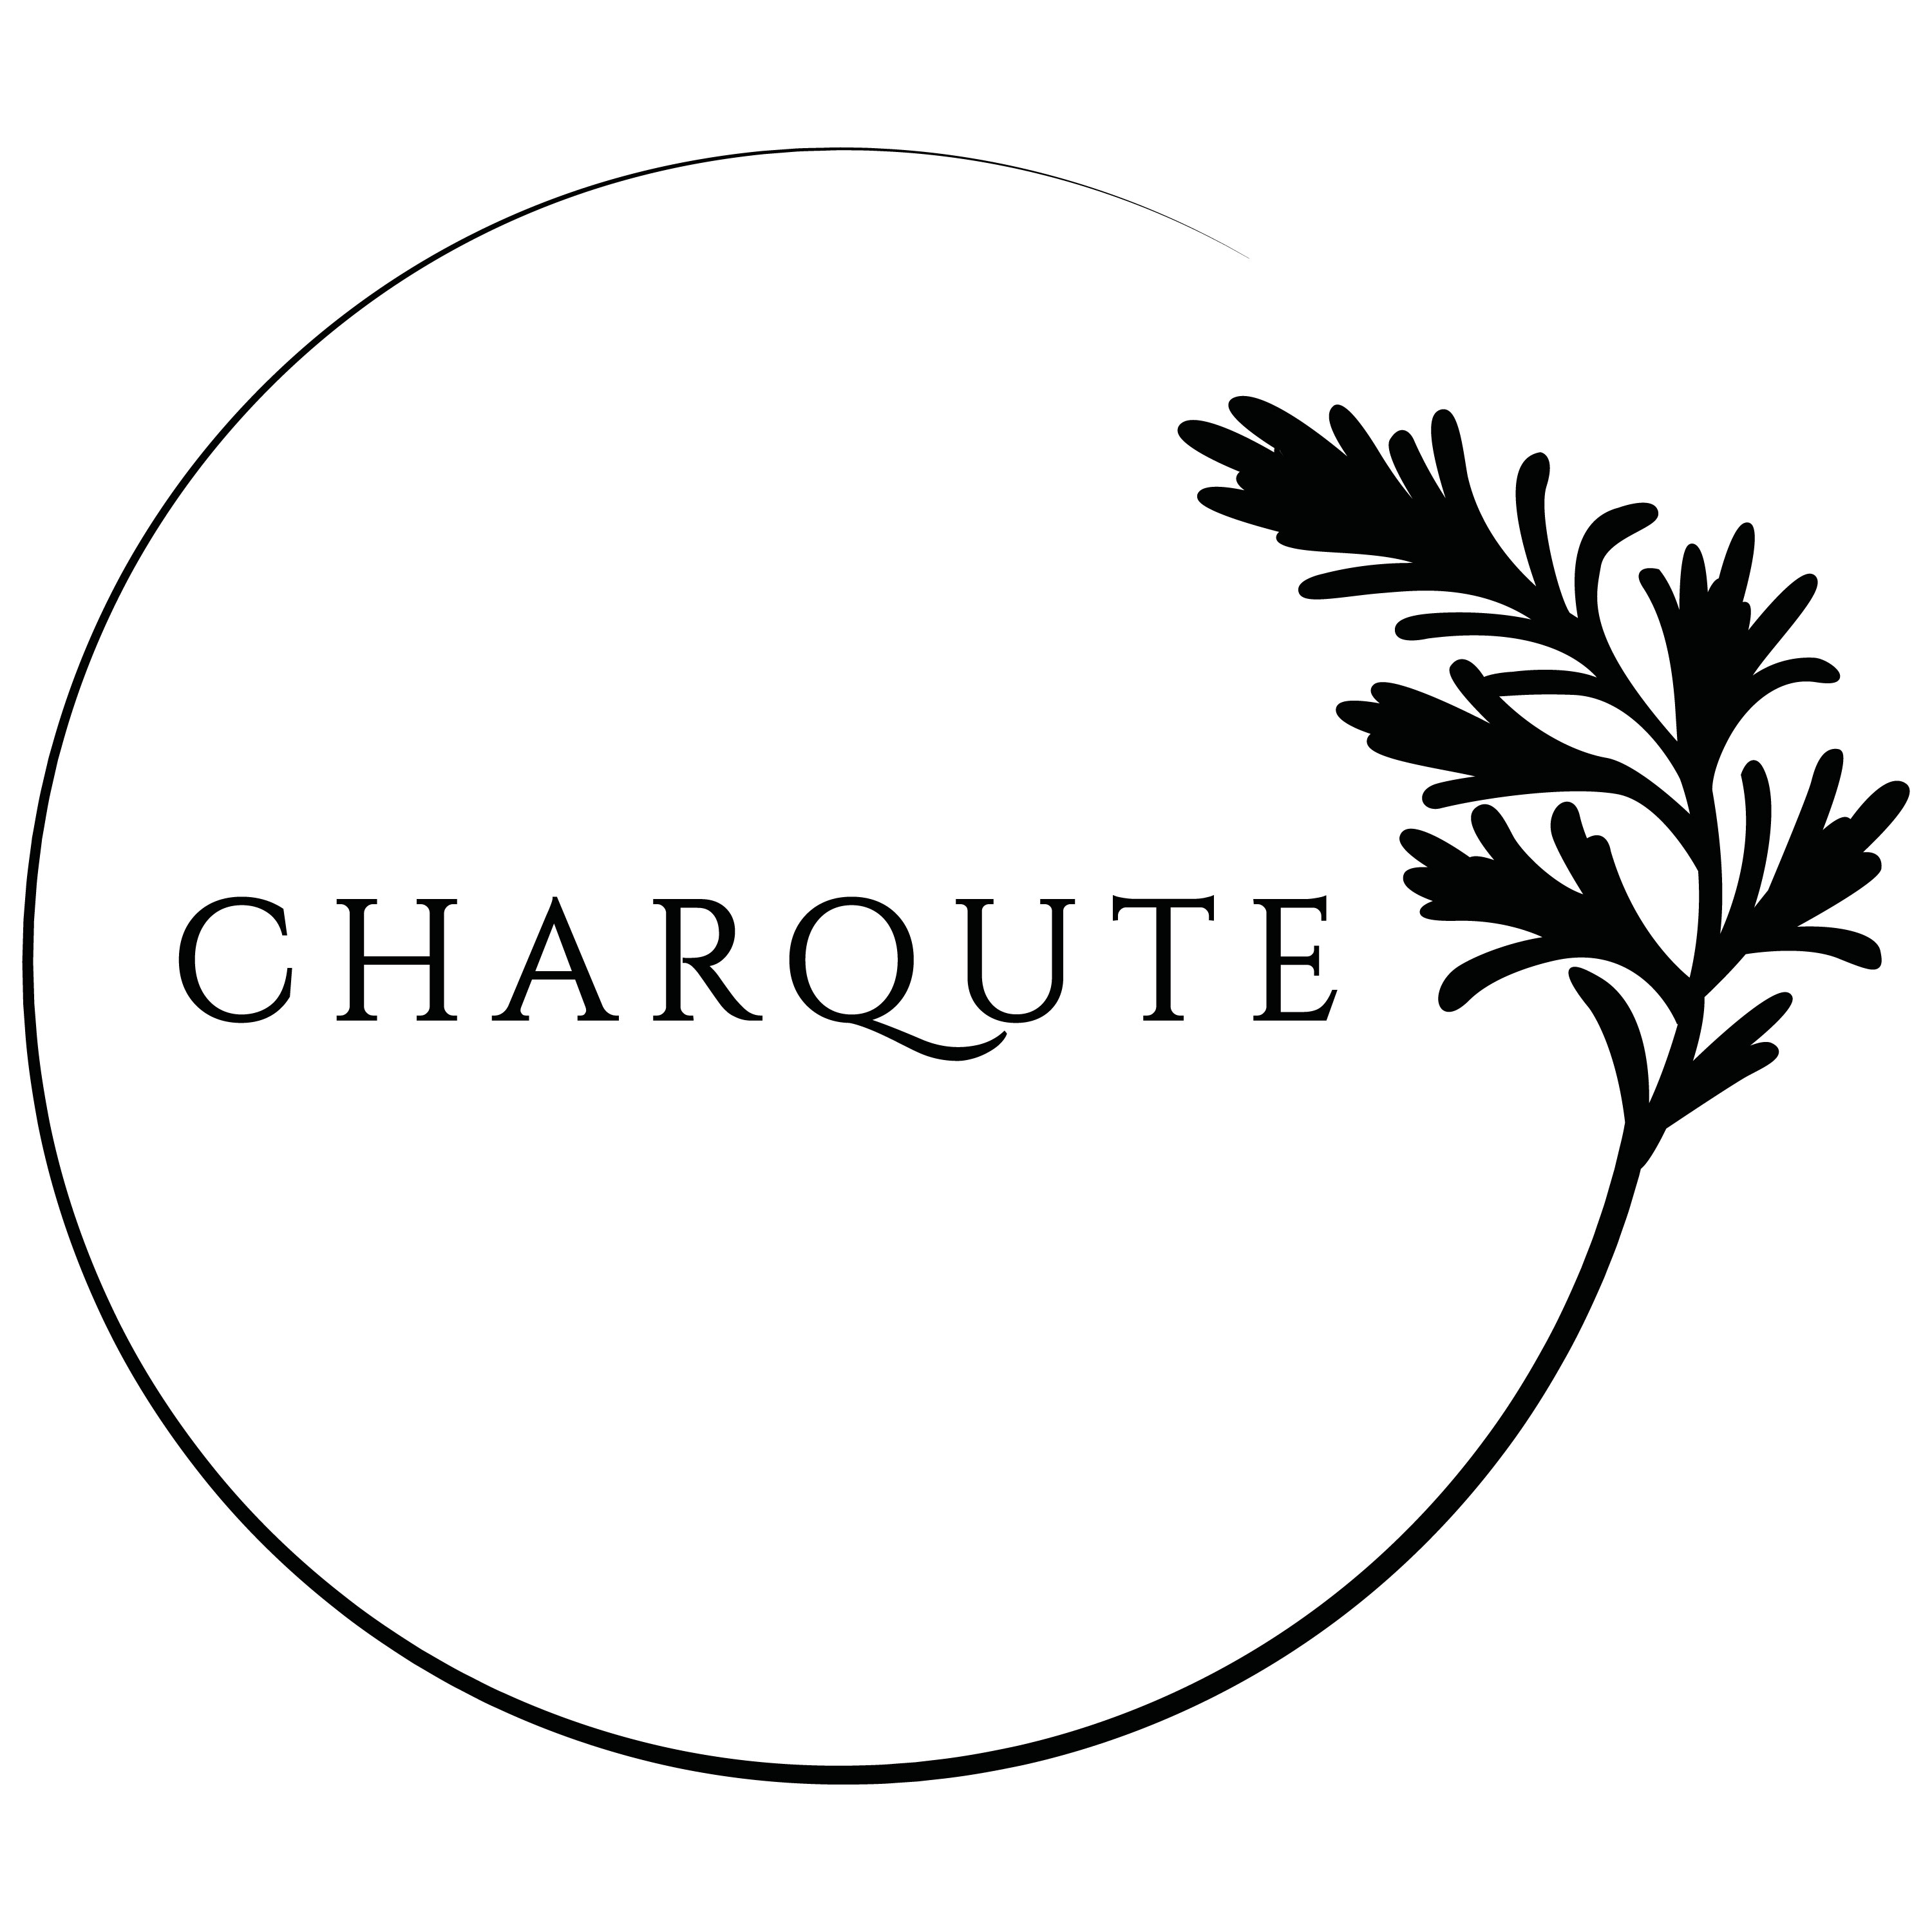 Charqute